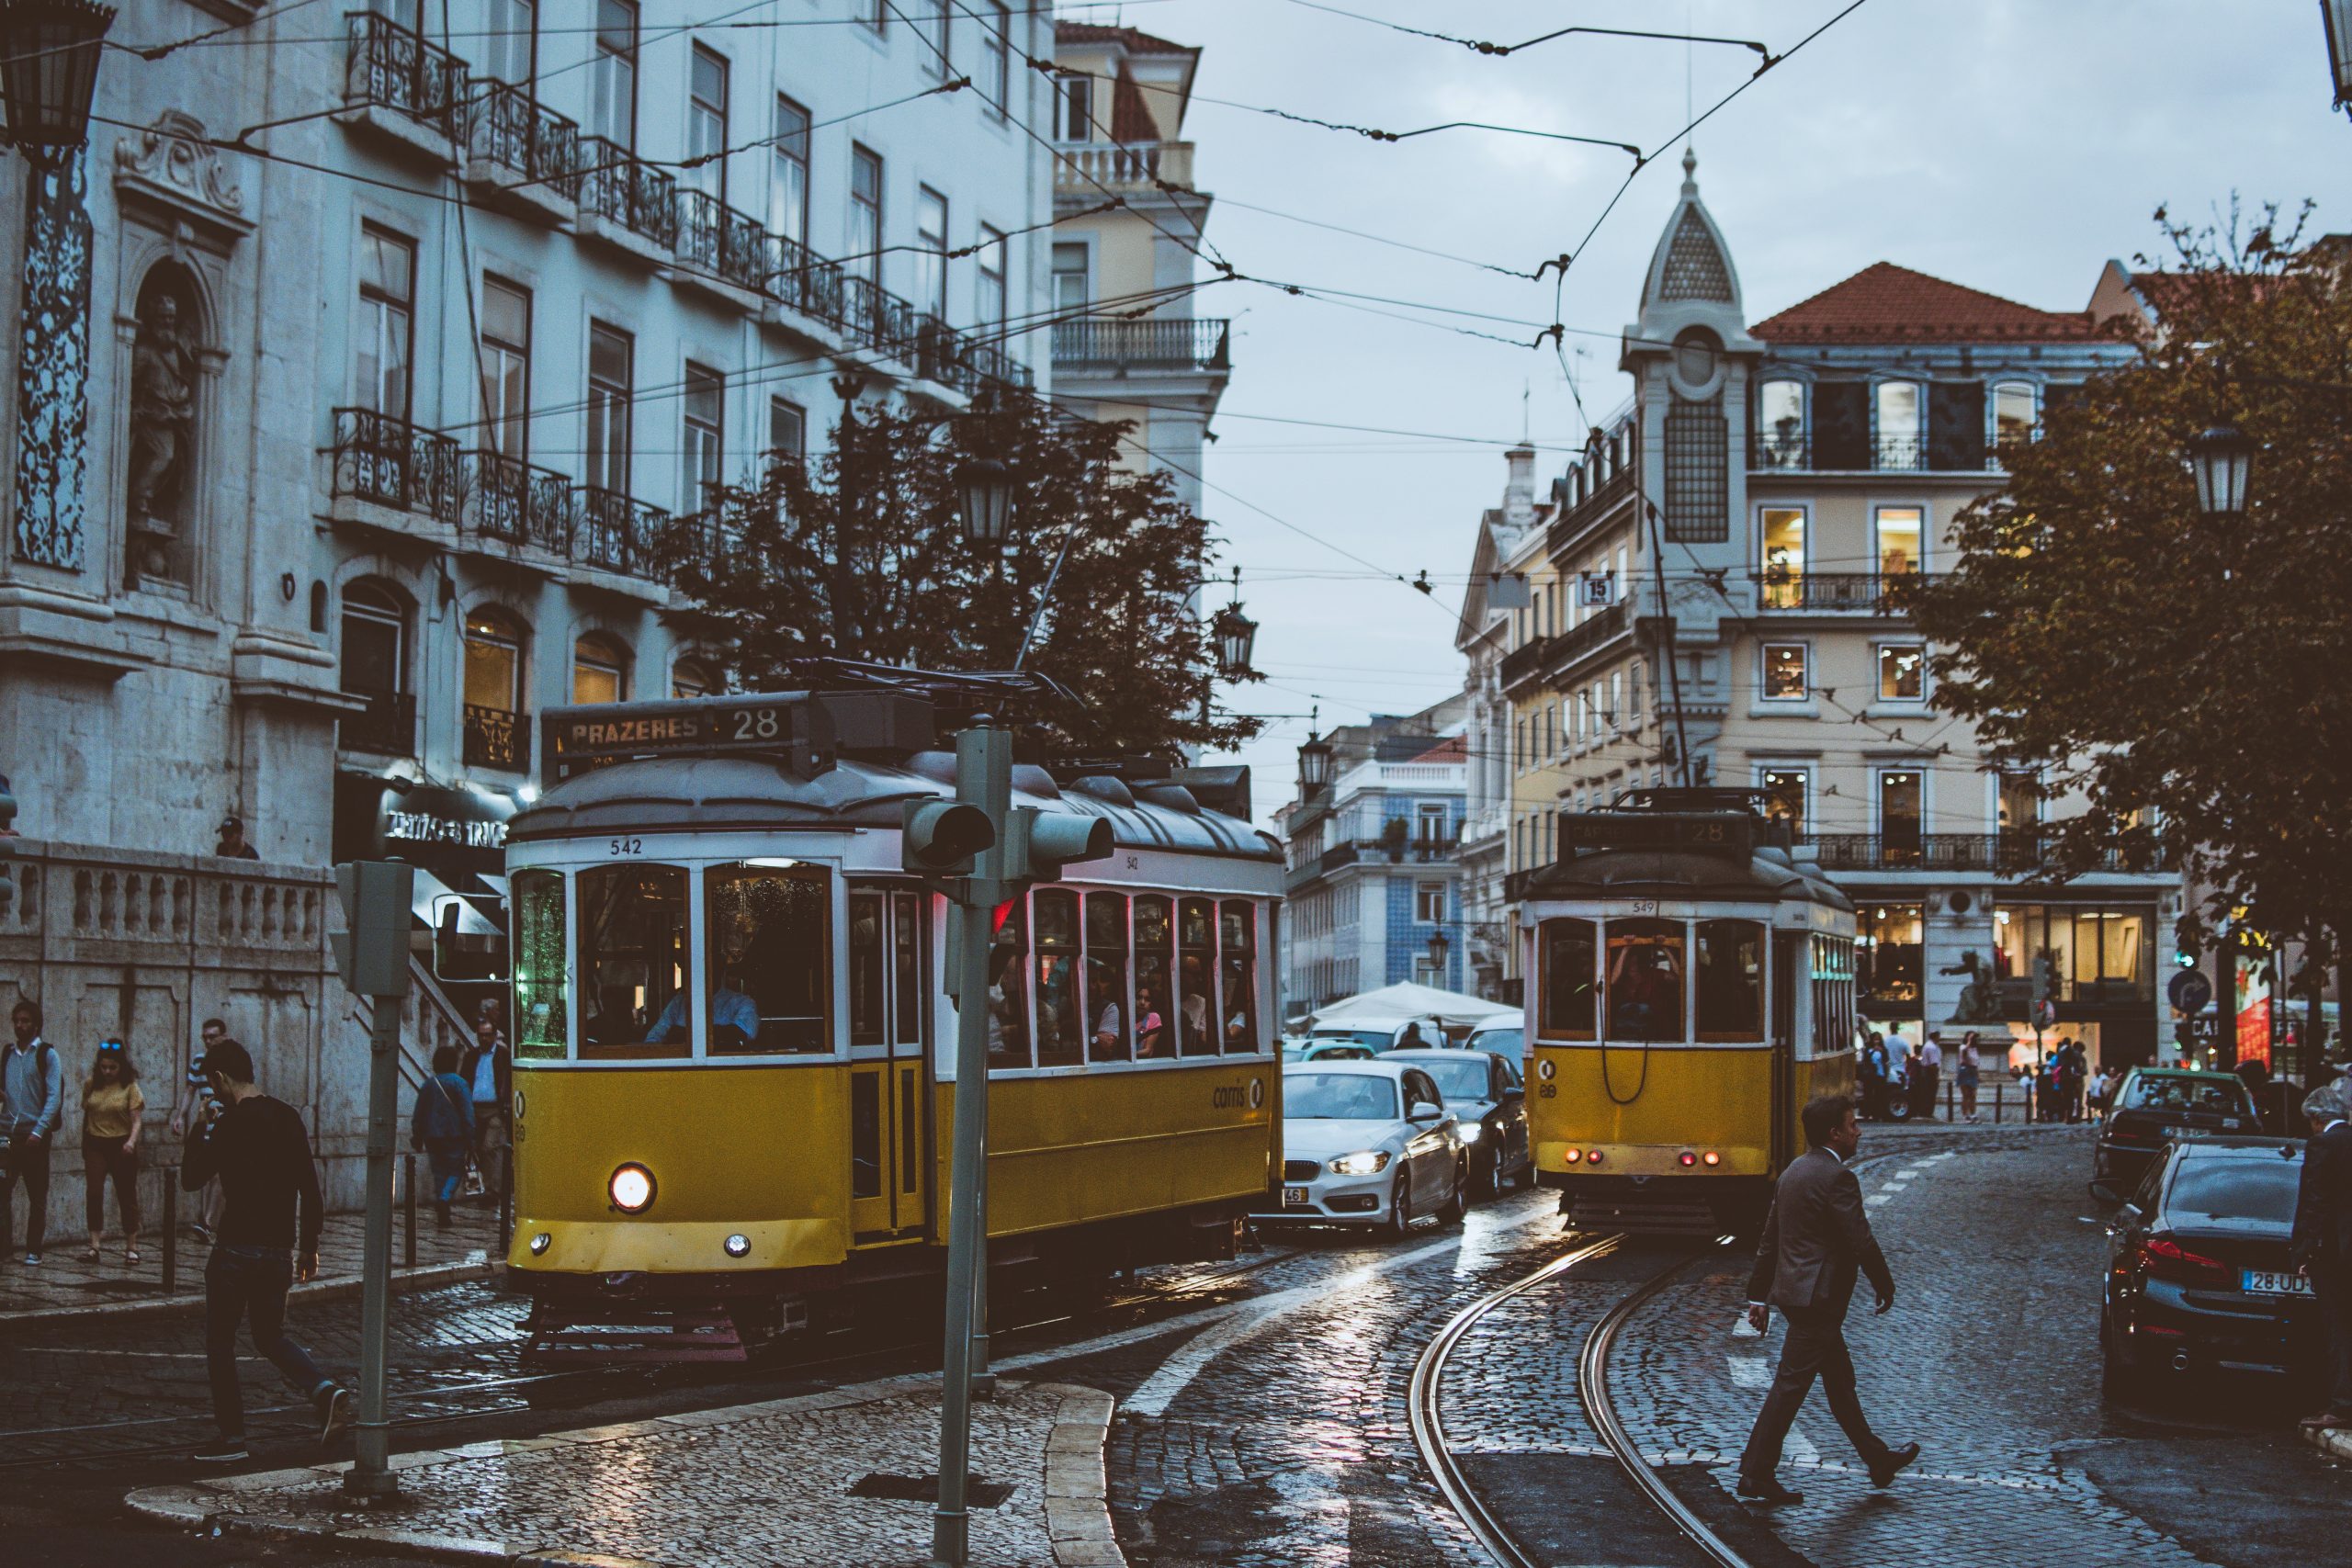 Lisbon City